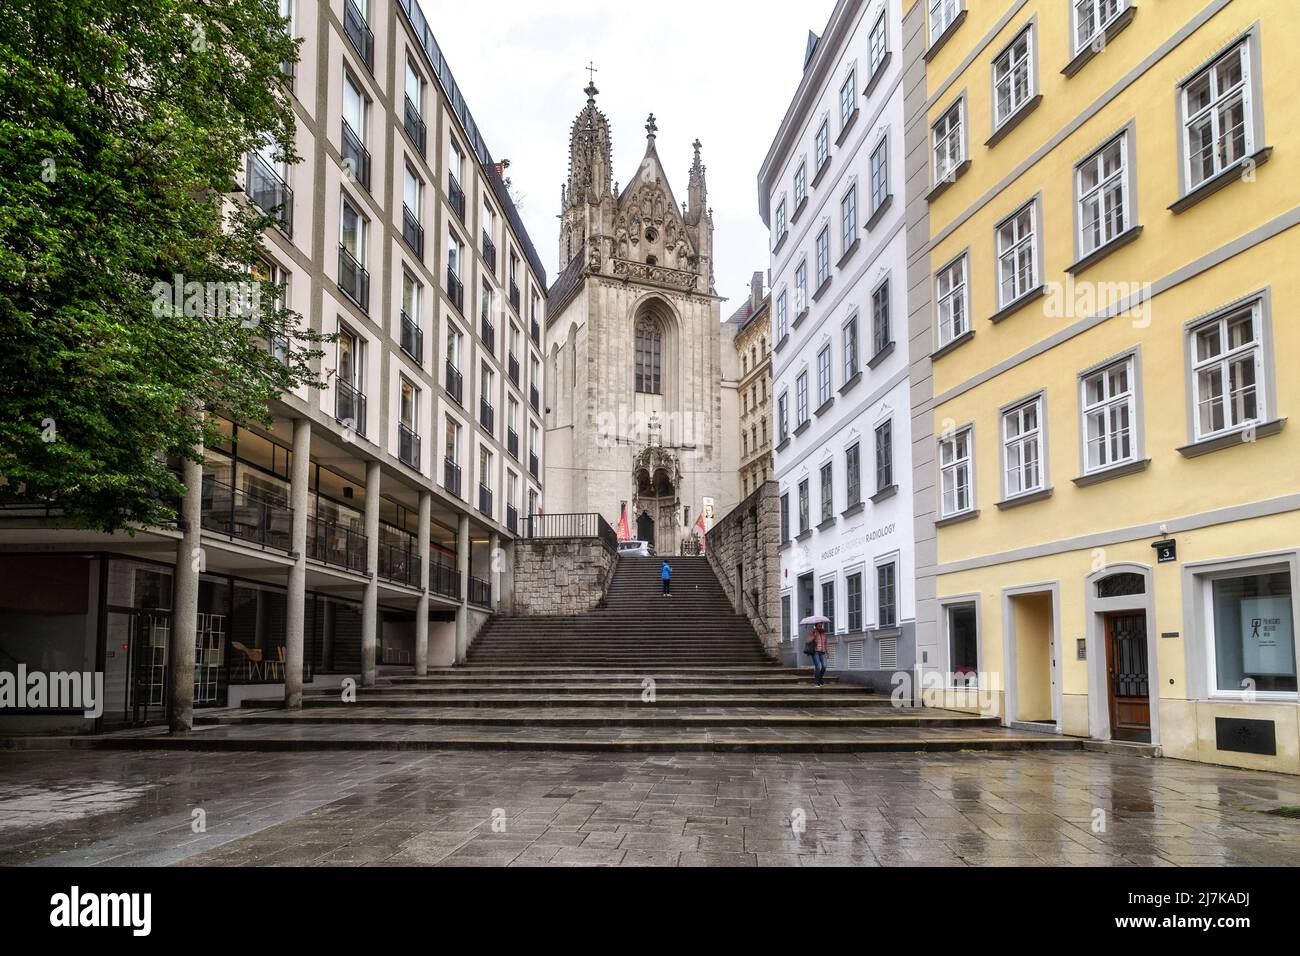 VIENNE, AUTRICHE - 22 MAI 2019 : c'est l'un des plus anciens bâtiments de la capitale autrichienne - l'église catholique gothique Maria am Gestade. Banque D'Images